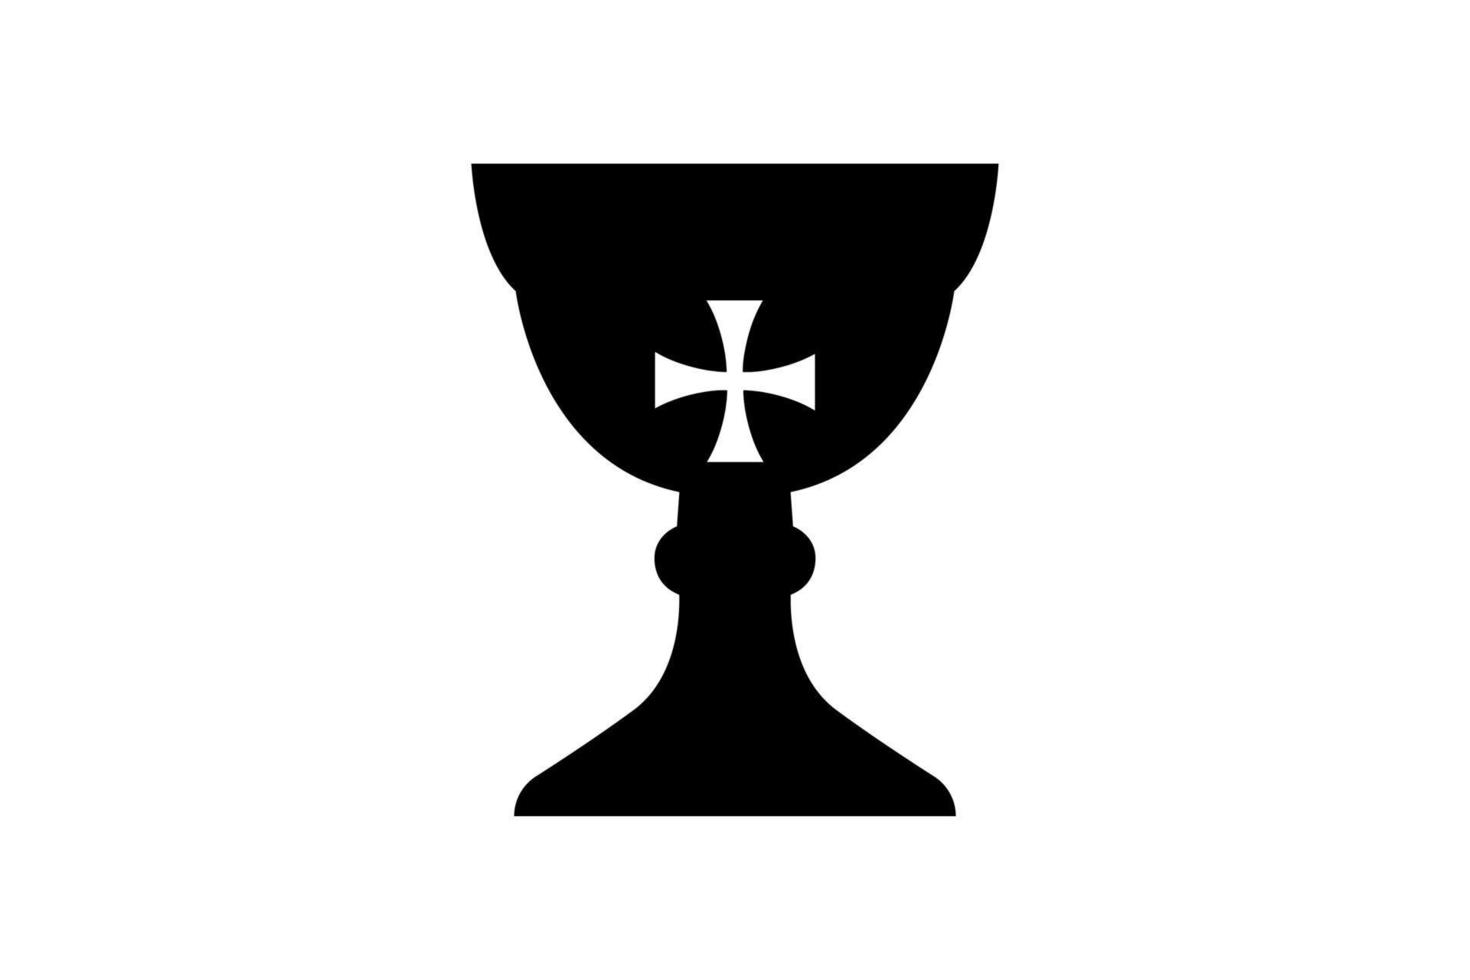 El santo grial, el signo de la copa, el símbolo místico medieval, la fuente de la vida y la inmortalidad, la abundancia y la fertilidad, el maravilloso concepto de sostén de la familia, vector aislado sobre fondo blanco.